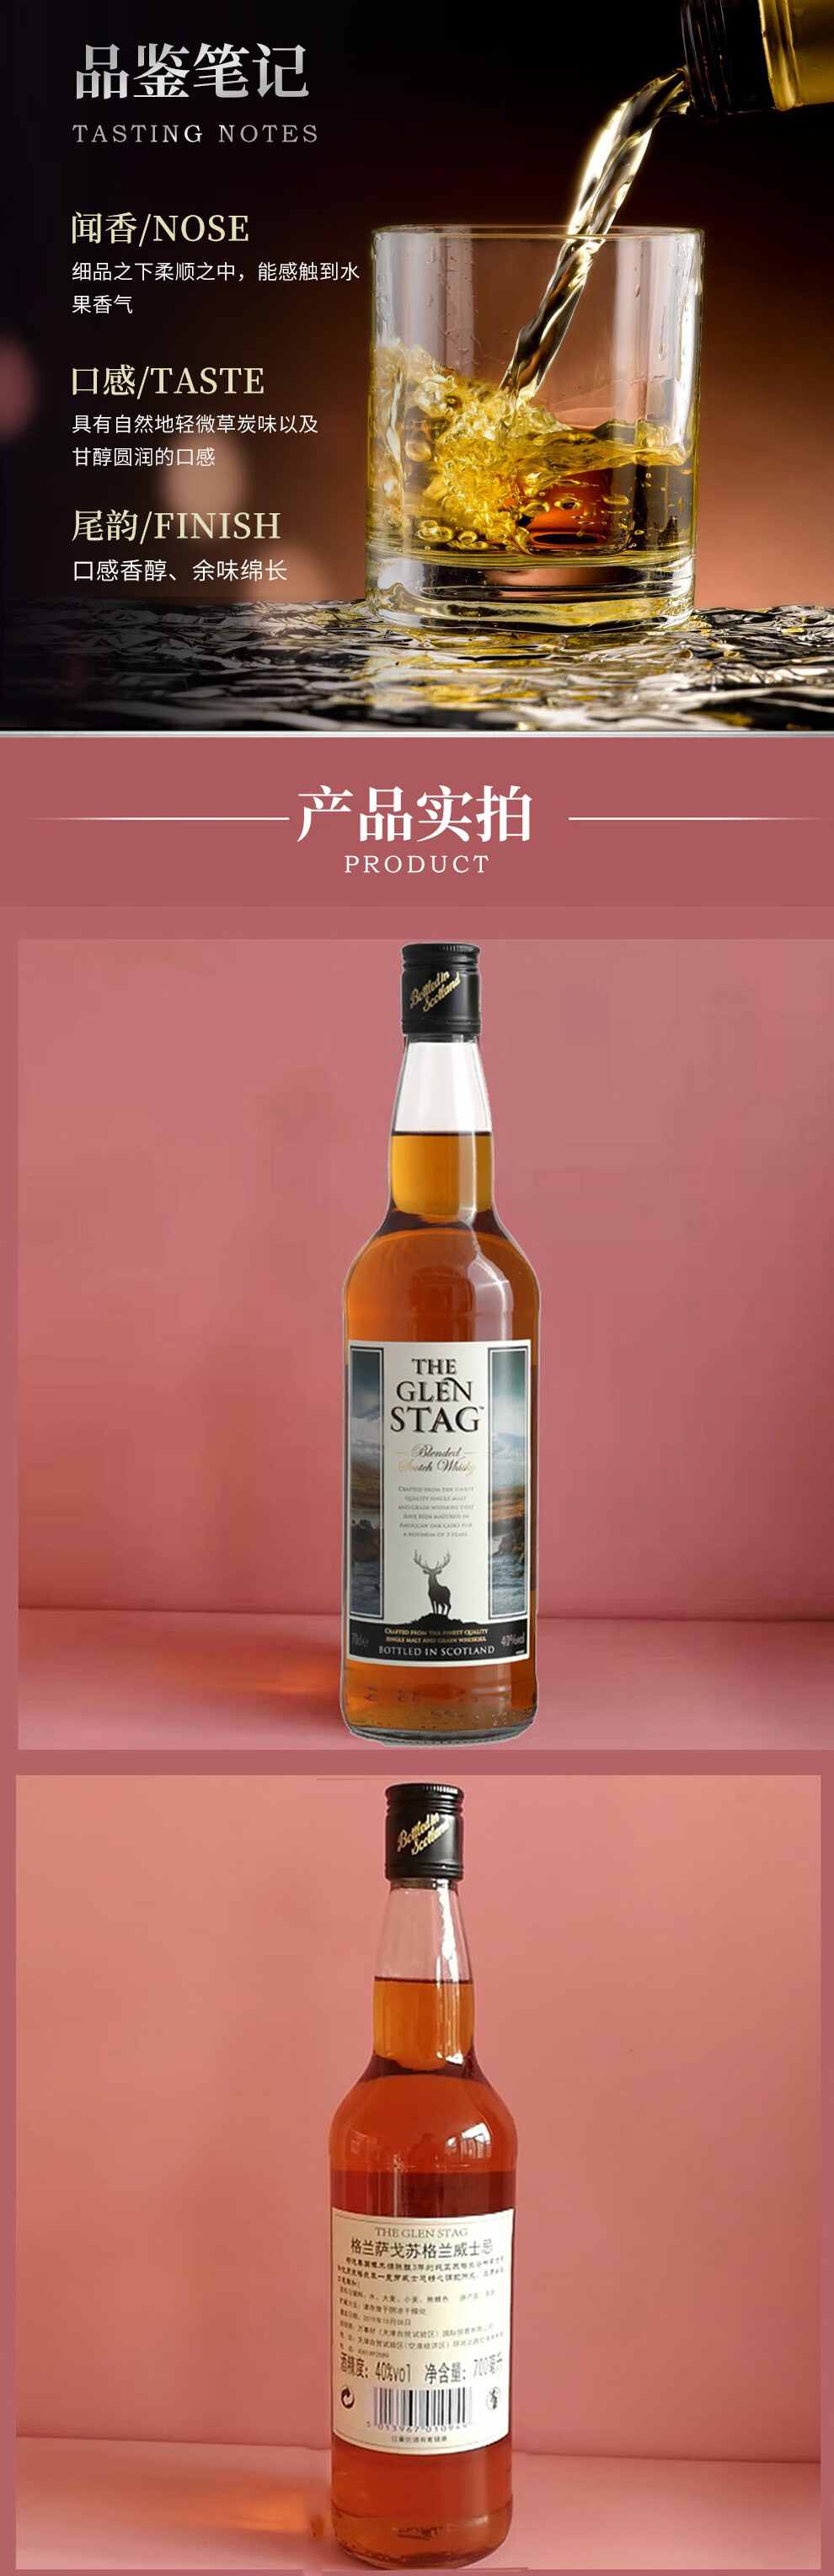 格兰萨戈（THE GLEN STAG）苏格兰进口威士忌 三年谷物调和威士忌 英国原瓶进口洋酒盒装 700ml单支装